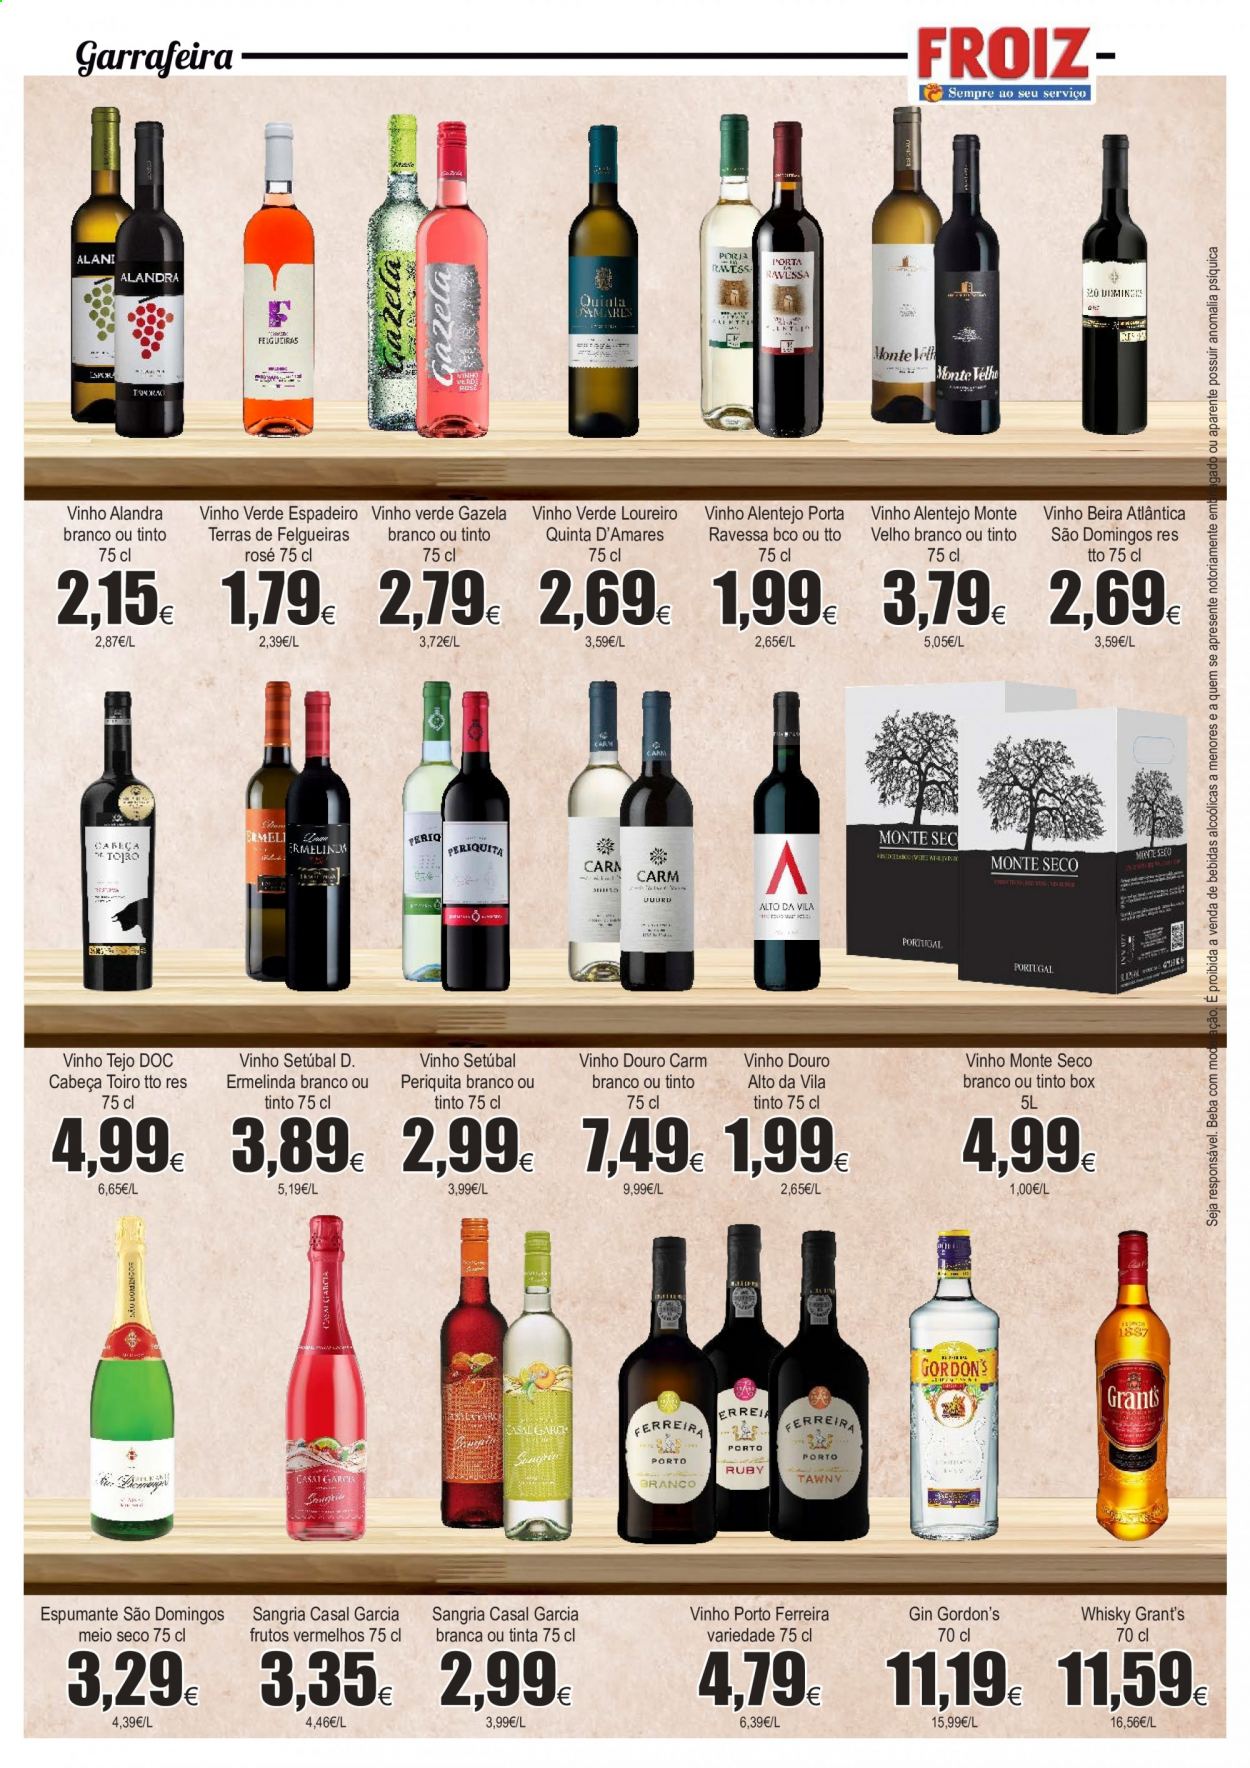 thumbnail - Folheto Froiz - 6.1.2021 - 27.1.2021 - Produtos em promoção - vinho, espumante, gin, Grant‘s, whiskey. Página 14.